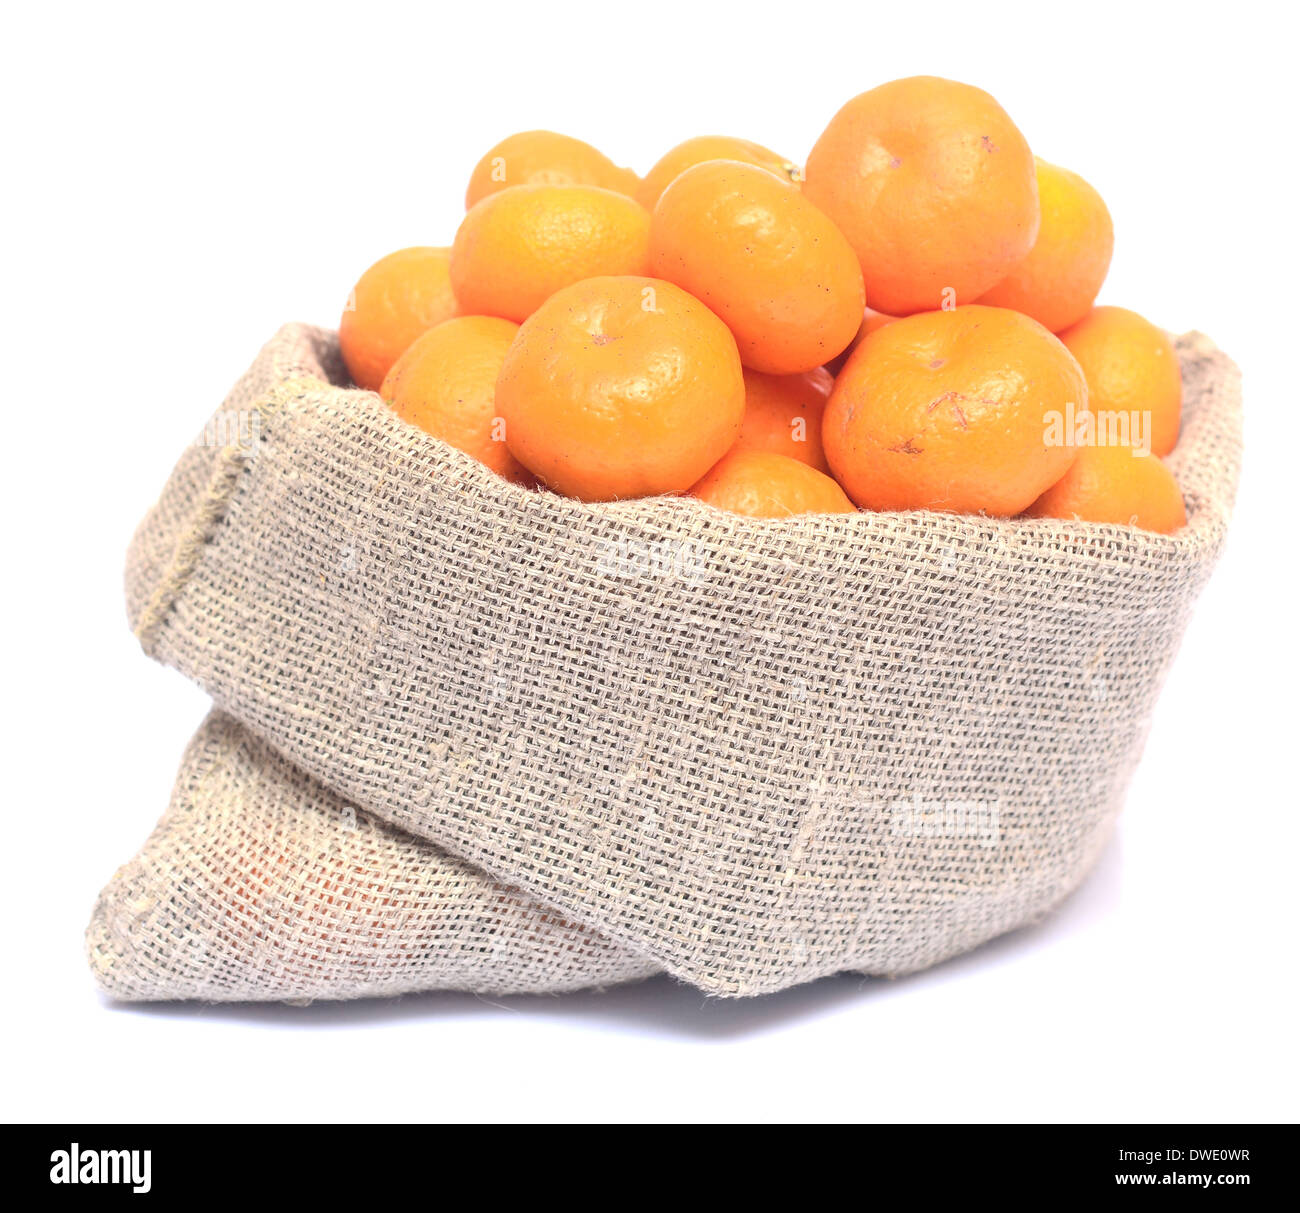 Mandarinas maduras aislado sobre fondo blanco. Foto de stock